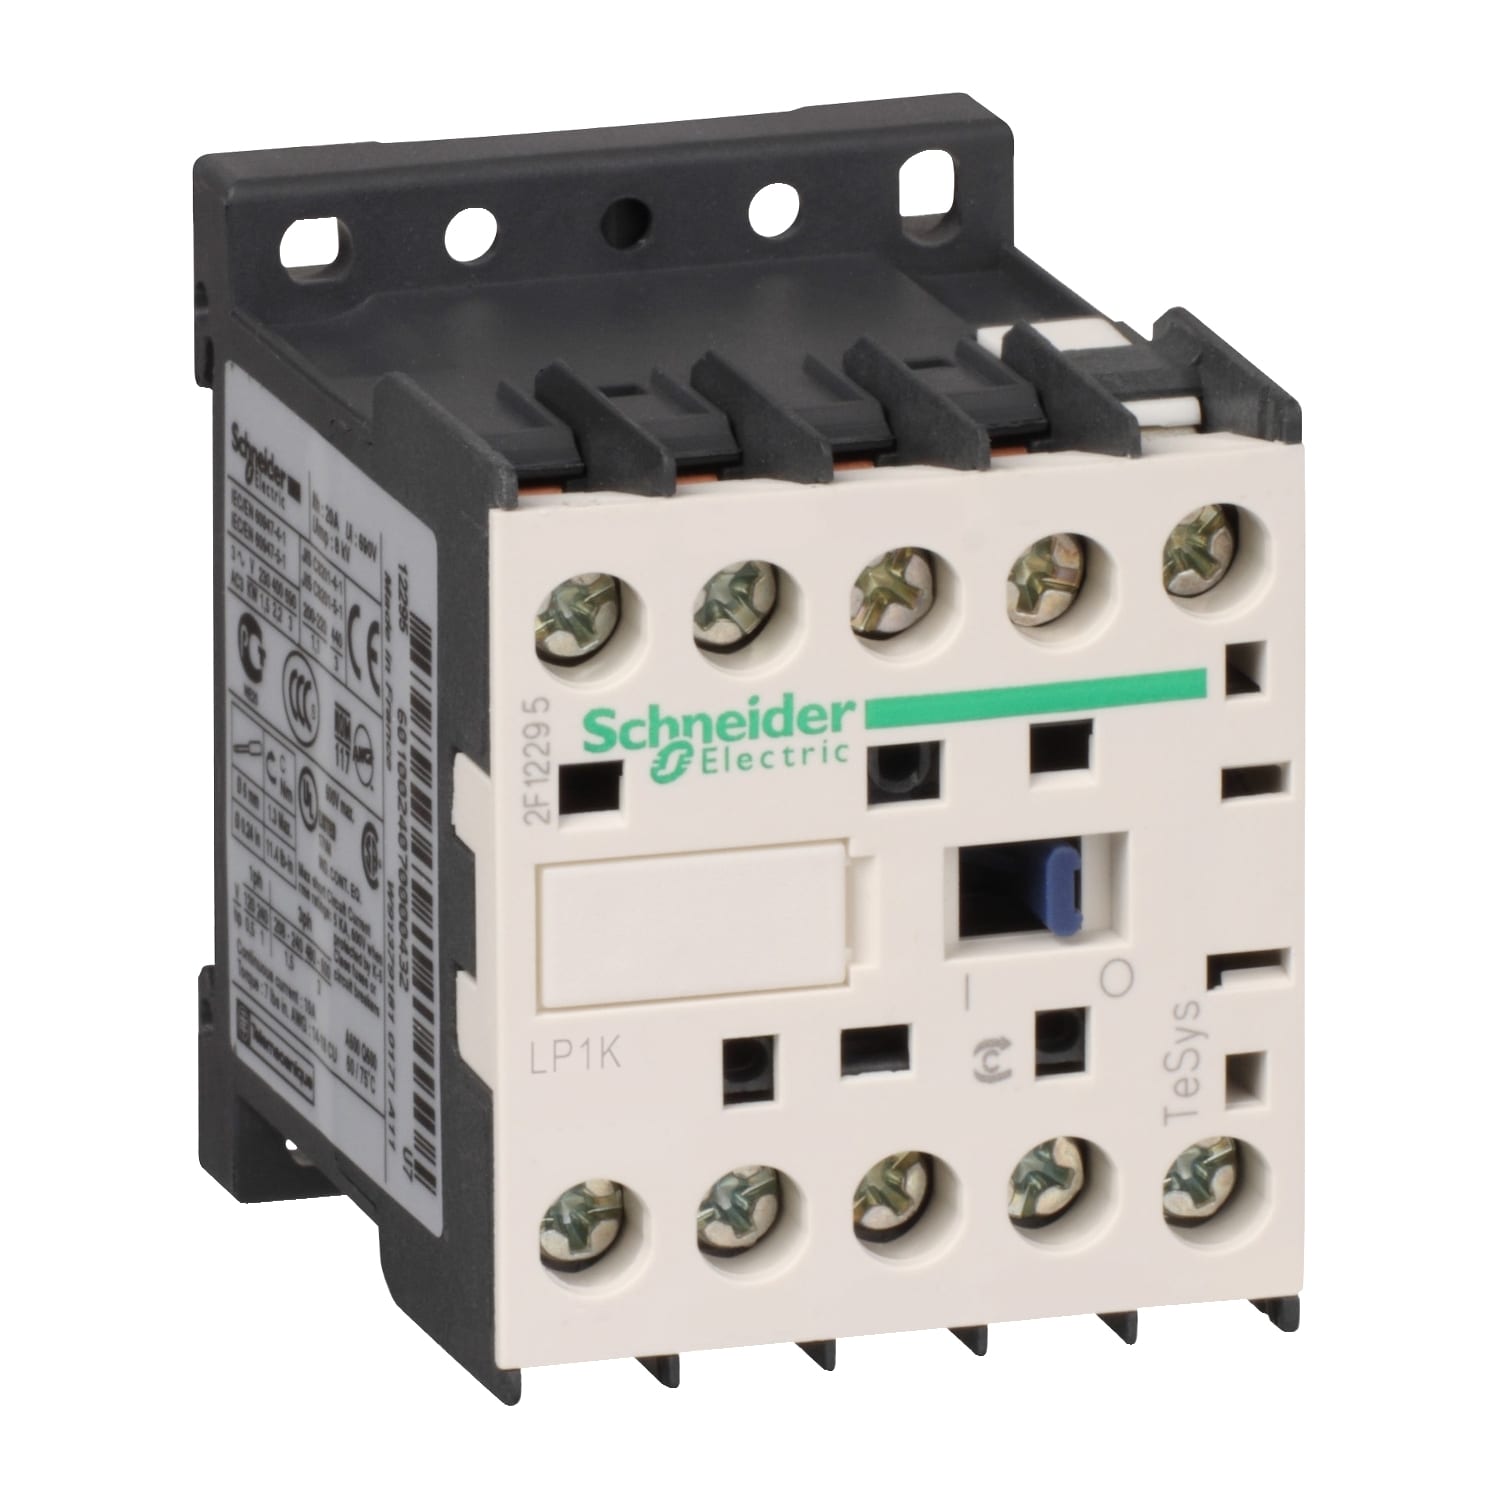 Schneider Electric - TeSys LP1K - contacteur - 4P - AC-1 440V - 20A - bobine 12Vcc